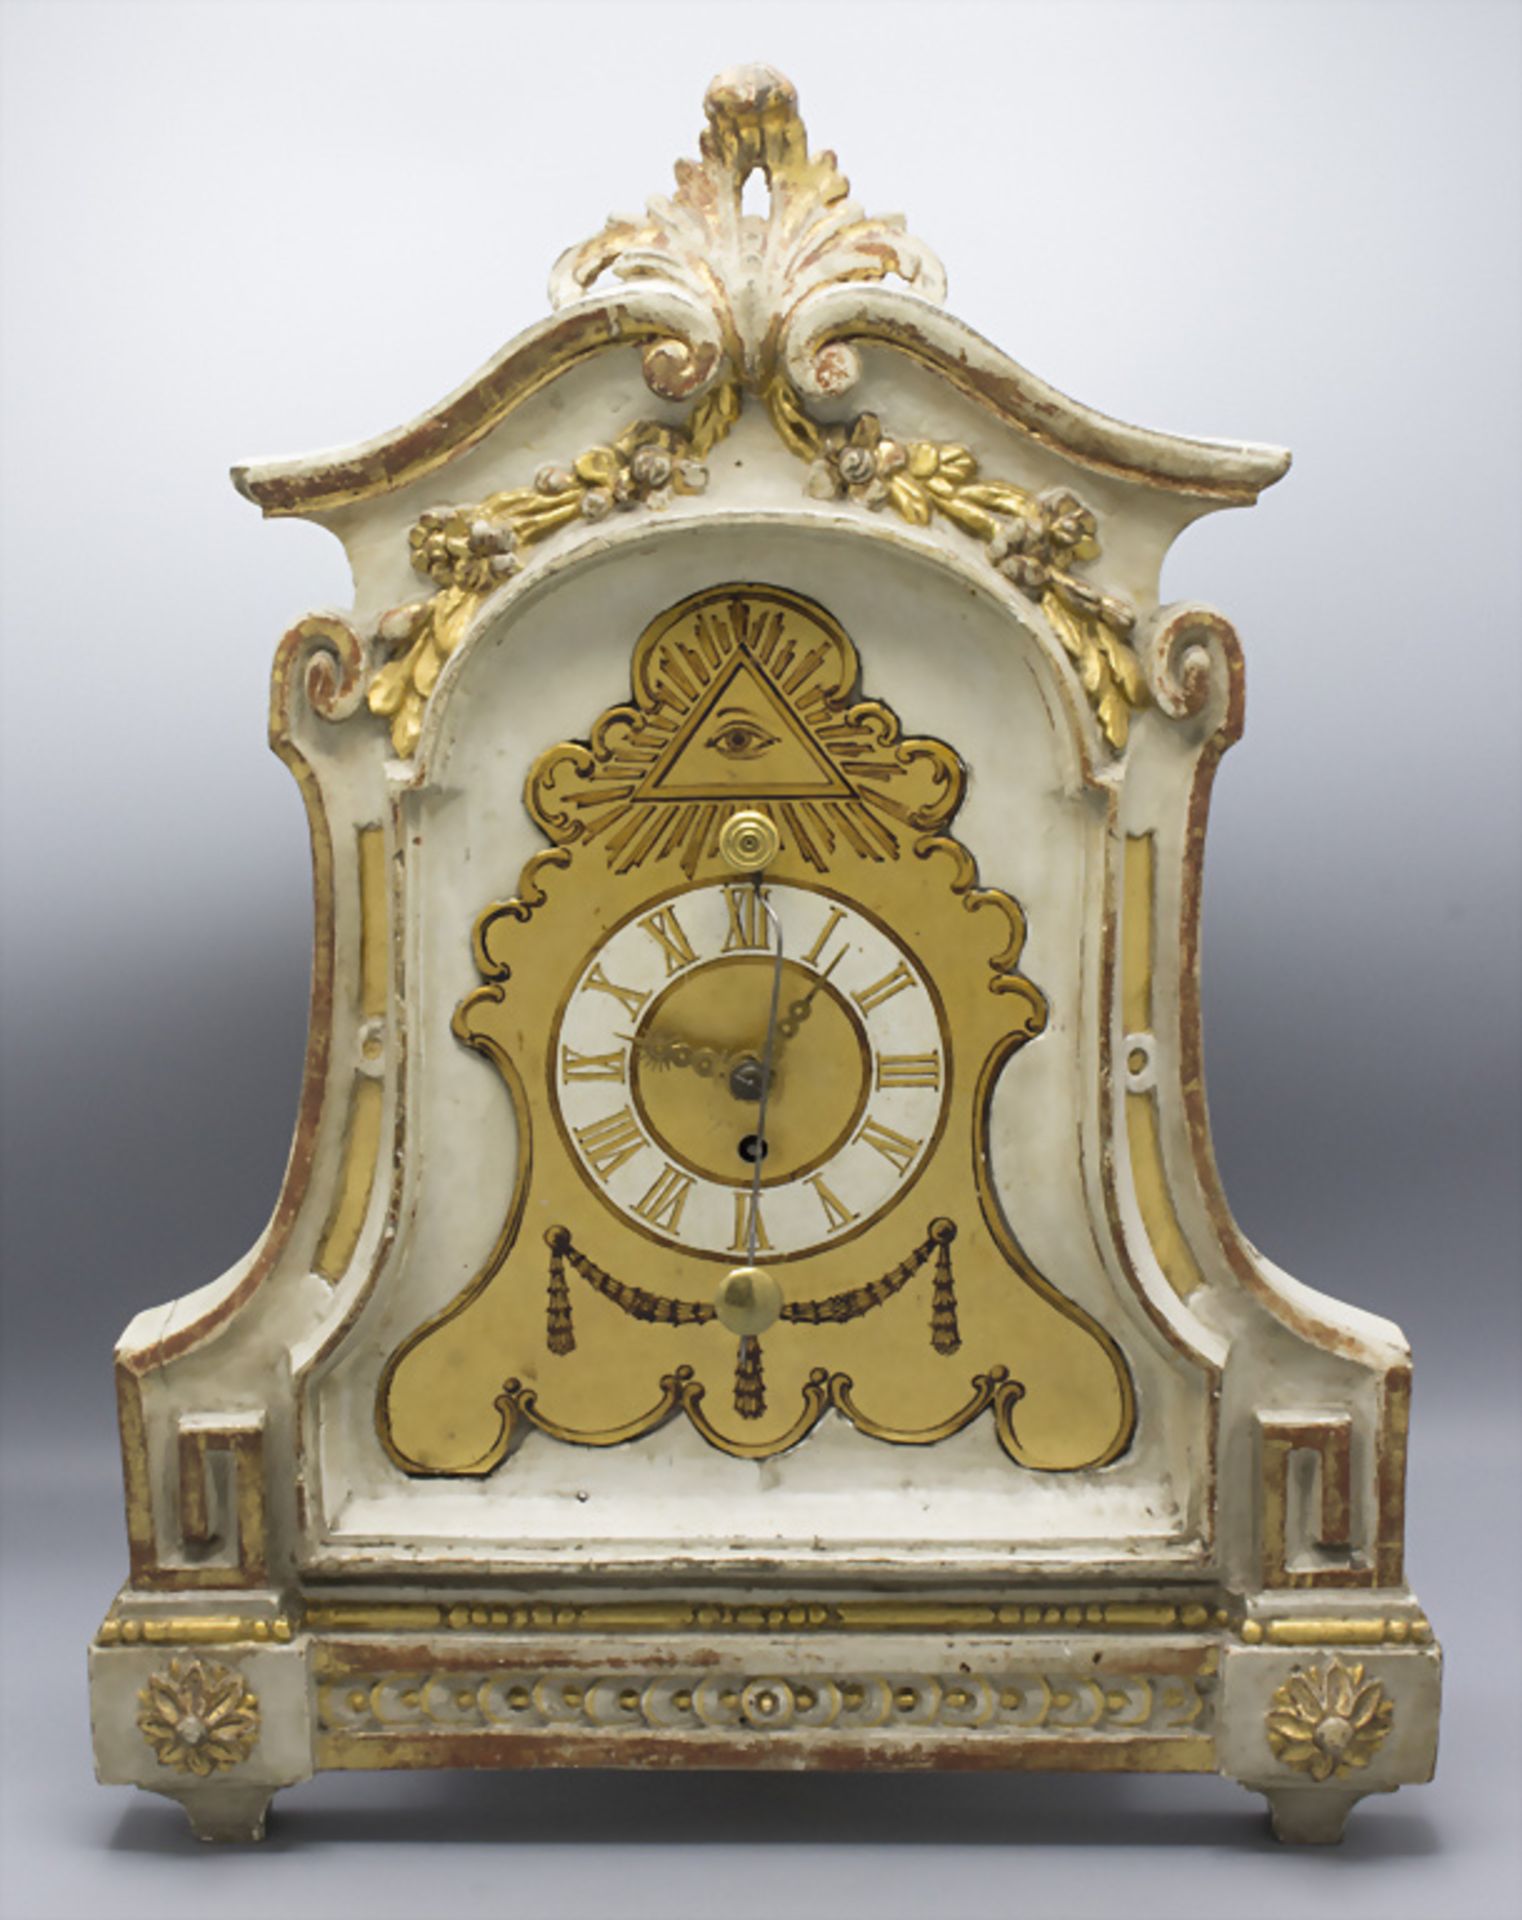 Klassizismus Tischuhr / A Classicism table clock, Georg Sticha, um 1780